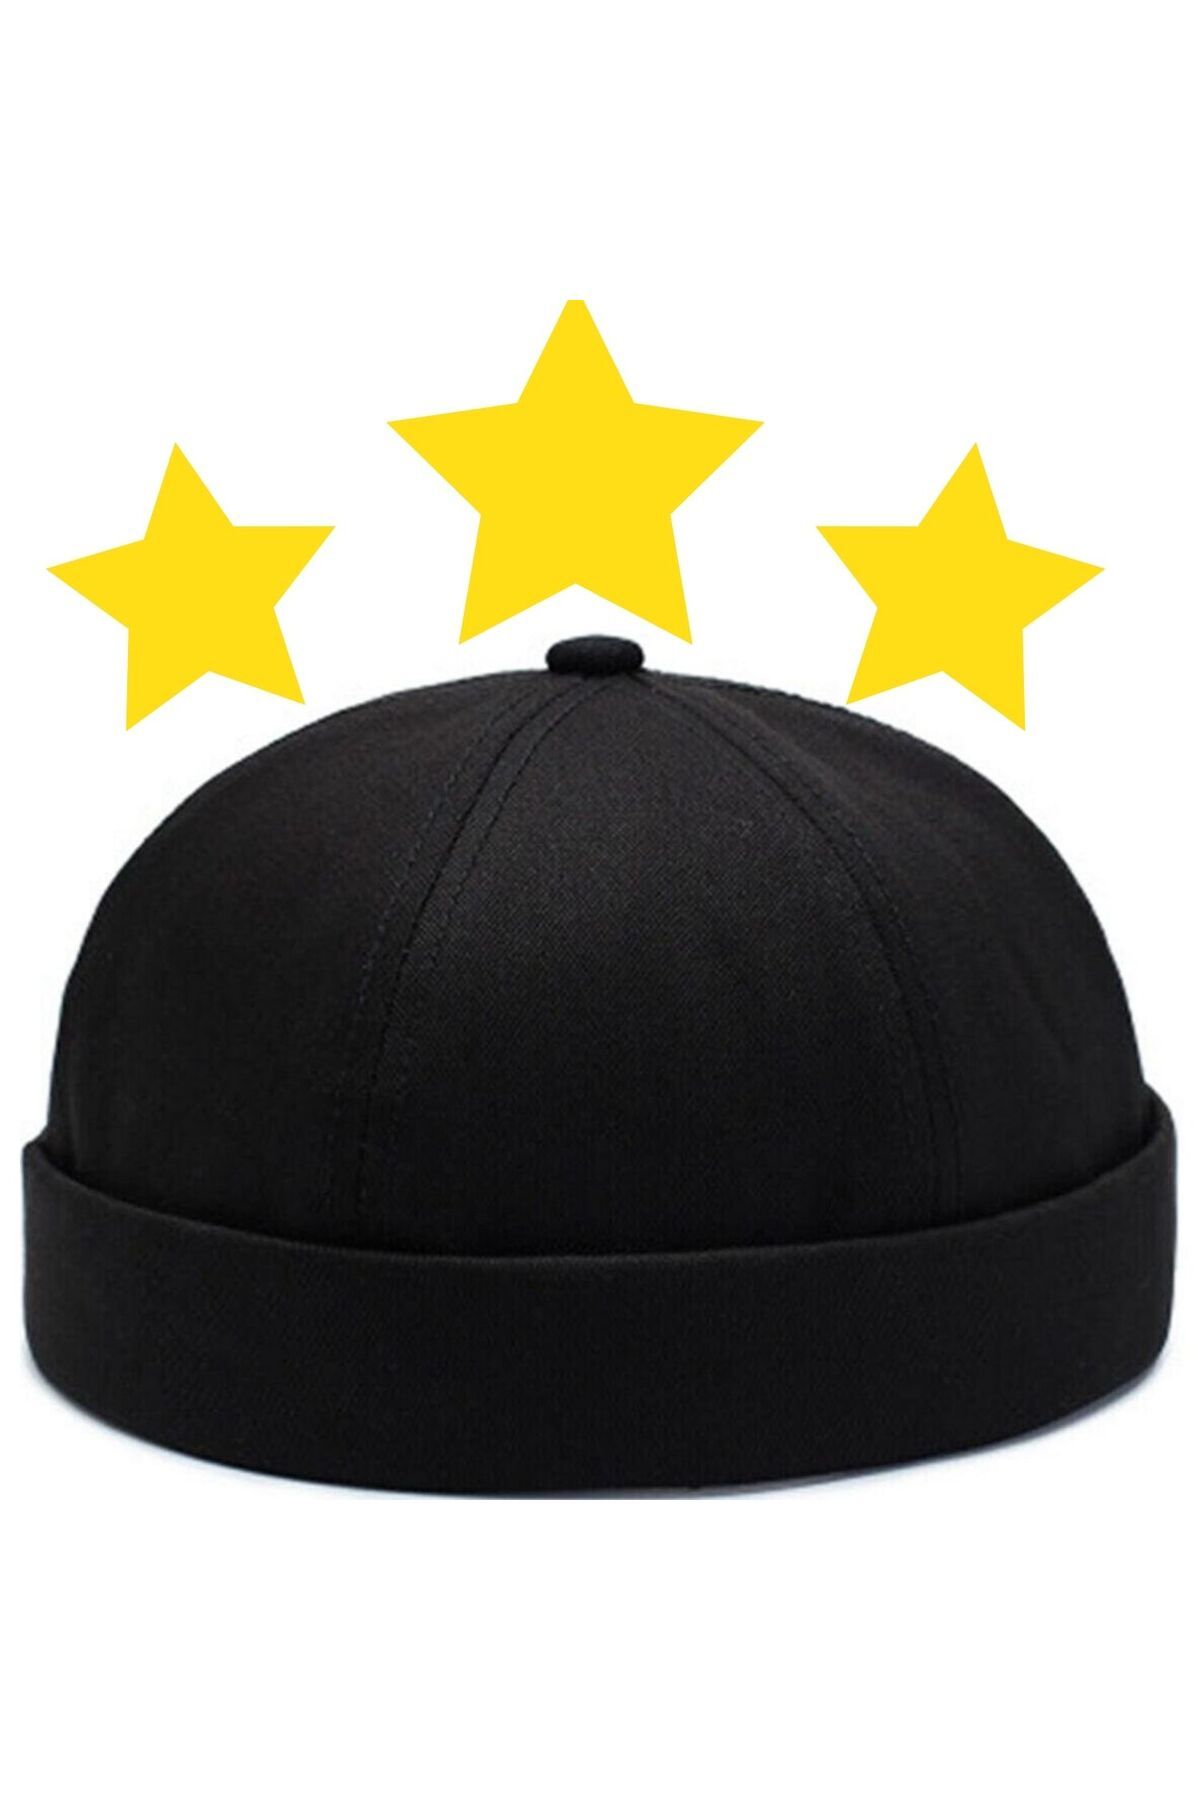 Rupen Kraft Unisex %100 Pamuk Cap Ayarlanabilir Docker Şapka Yazlık Takke Şapka Retro Şapka Siyah Takke Şapka